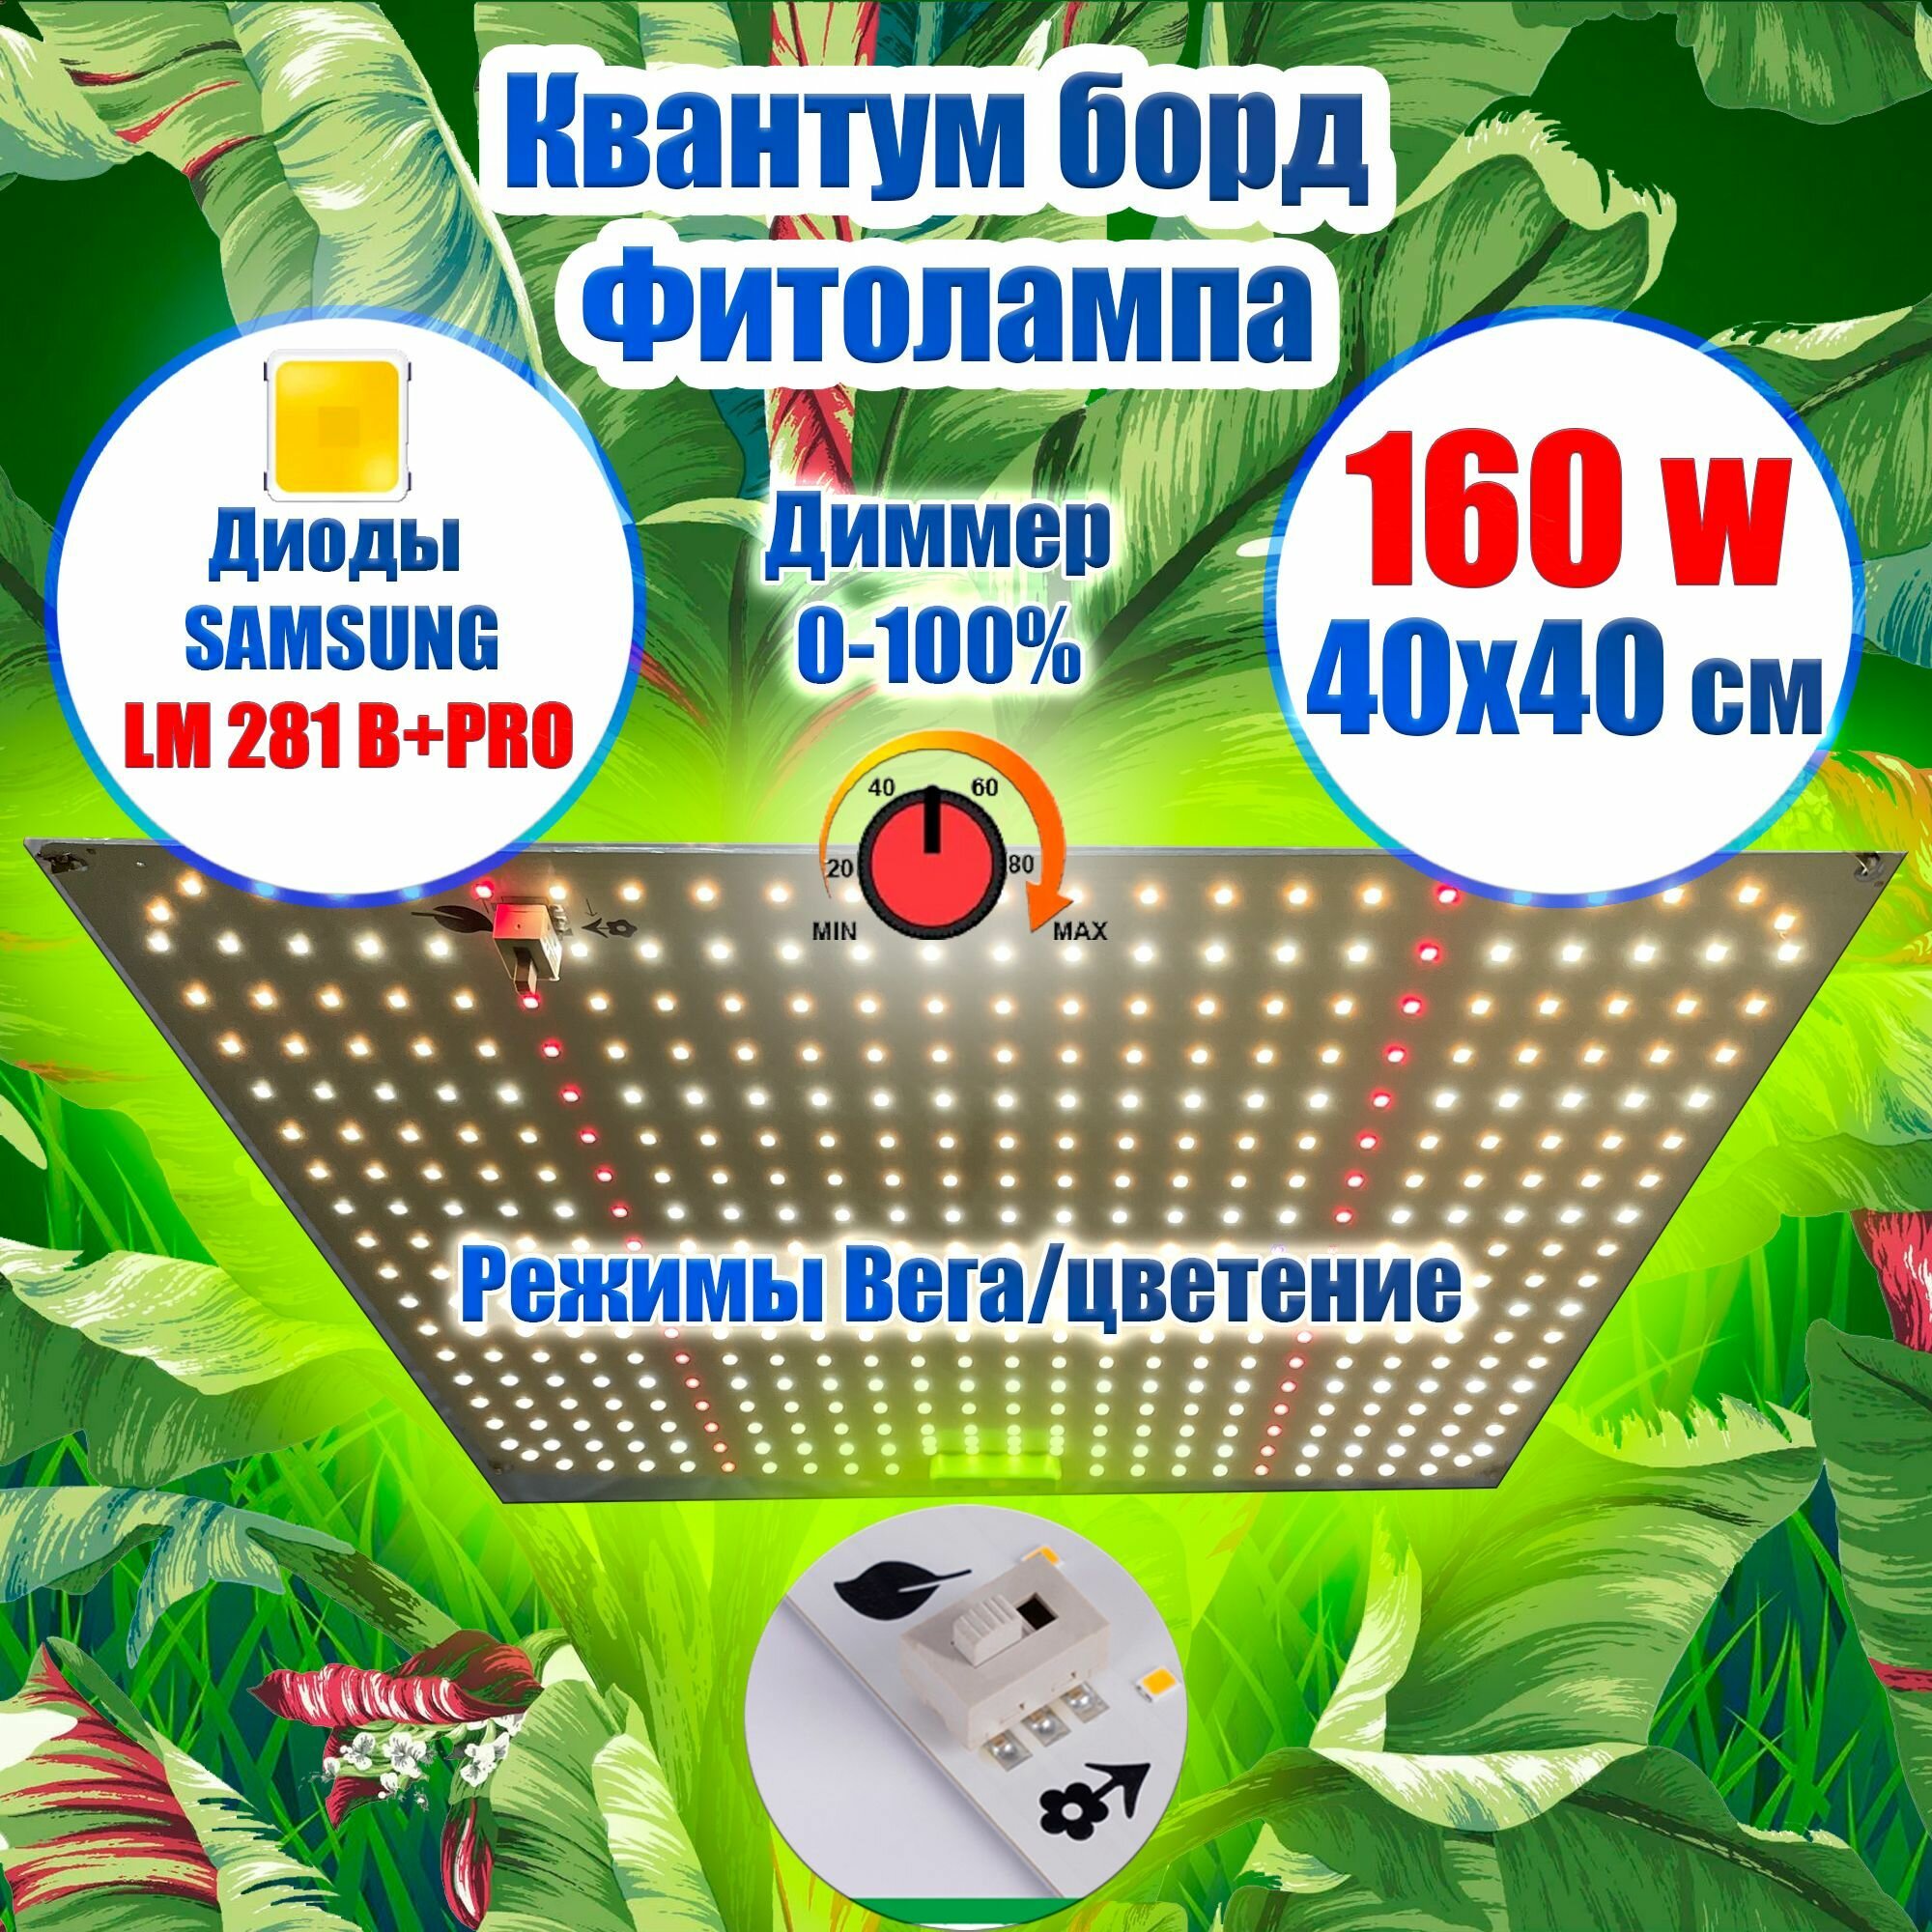 Лампа для растений 40х40см 150 ватт/ Квантум борд Диоды LM281b+ IR и UV с Диммером/ Фитолампа, фитосветильник, Режимы вегетация и цветение